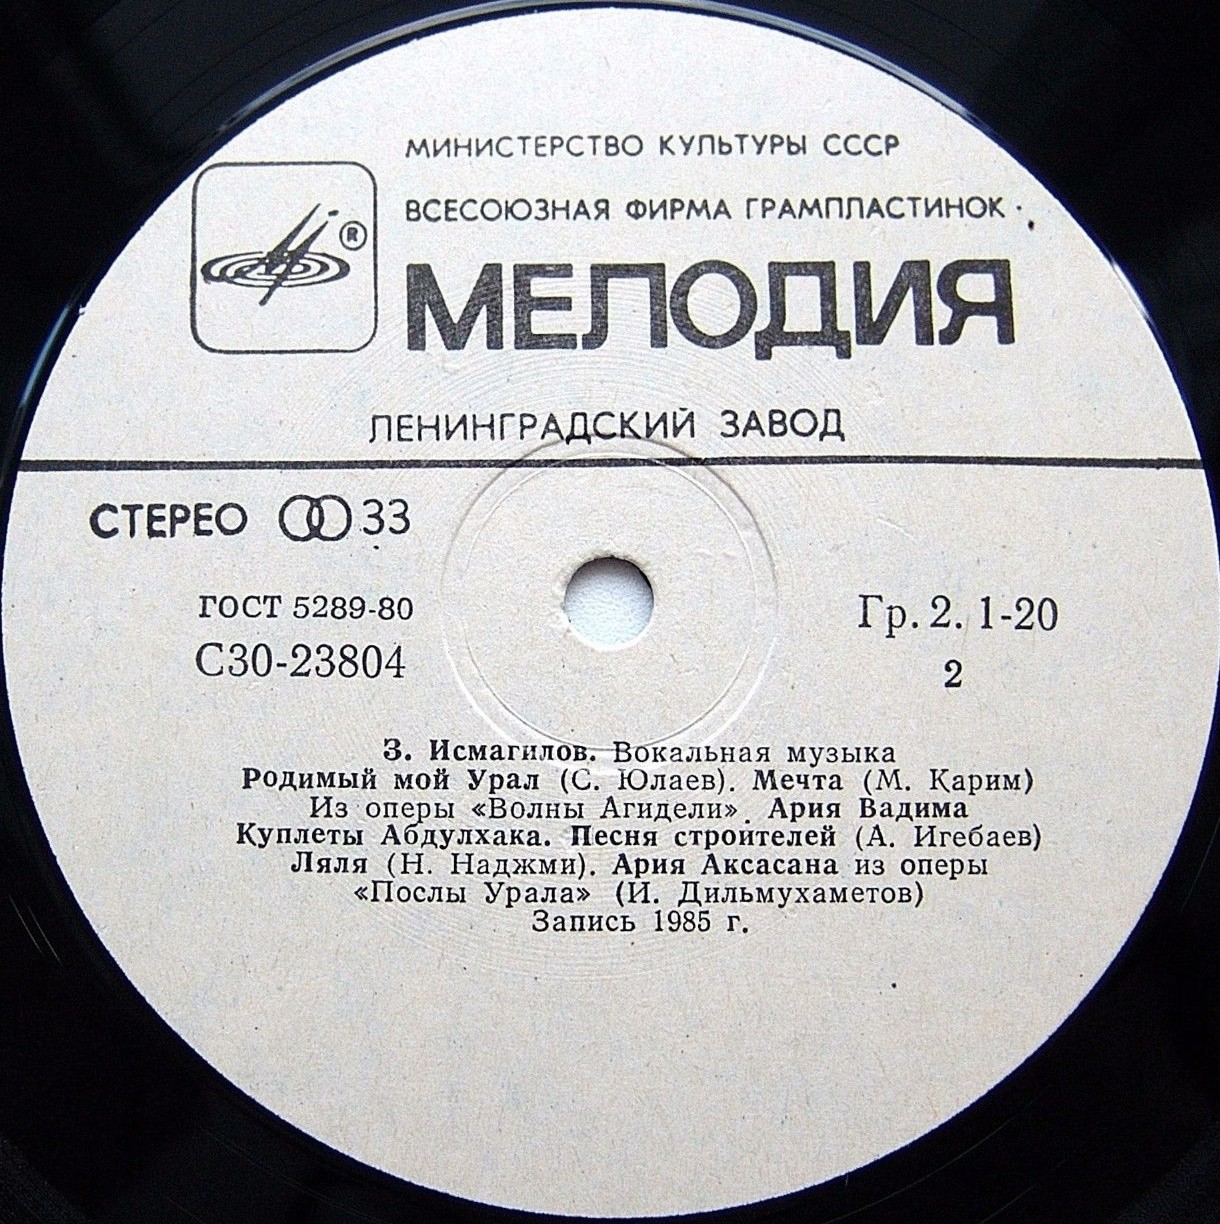 З. ИСМАГИЛОВ (1917): Вокальная музыка